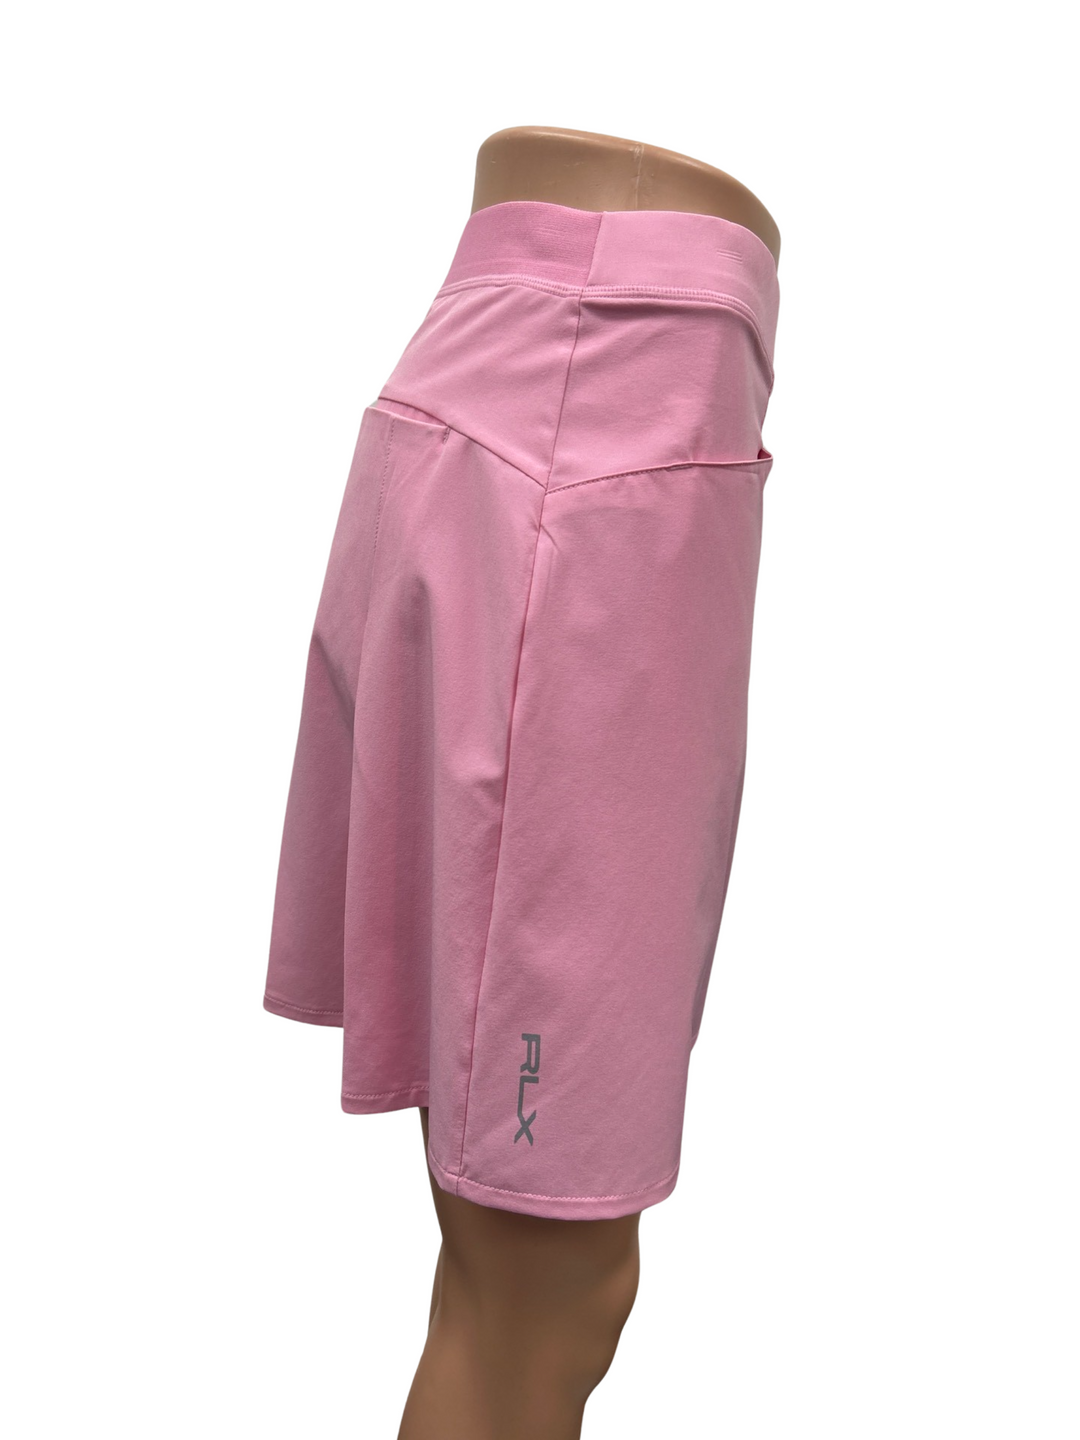 RLX By Ralph Lauren Pleated Skort - Pink - Size Medium - Skorzie